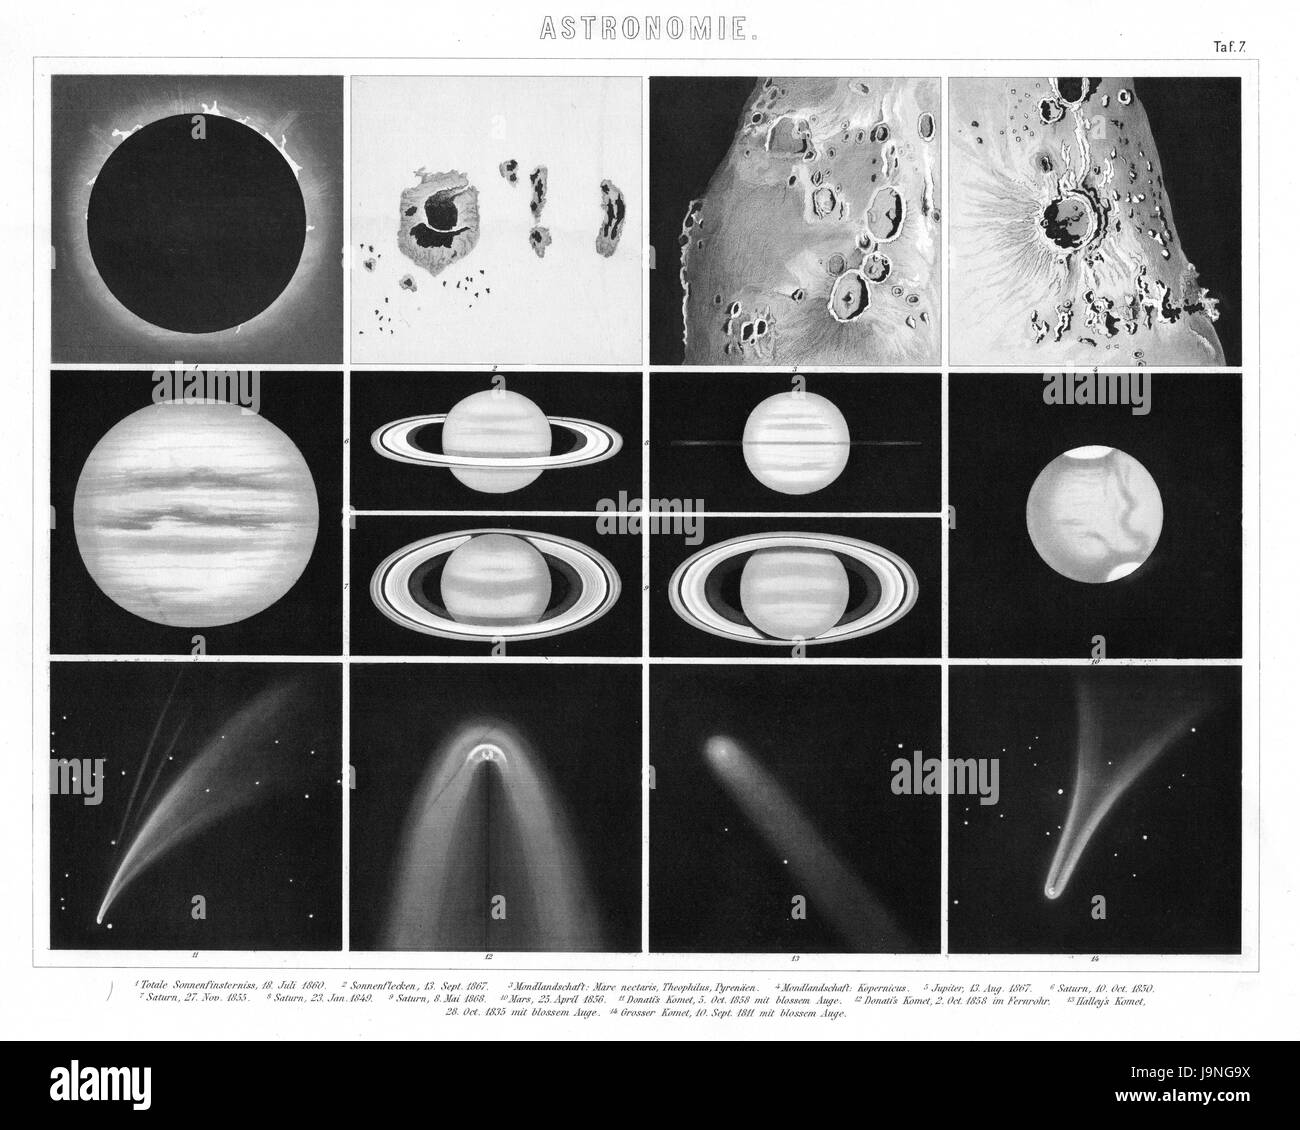 1874 antichi enciclopedia tedesca Atlas Stampa: Astronomia viste di pianeti, Saturno, Giove, Marte, comete e eclissi solare e la superficie della luna. Foto Stock